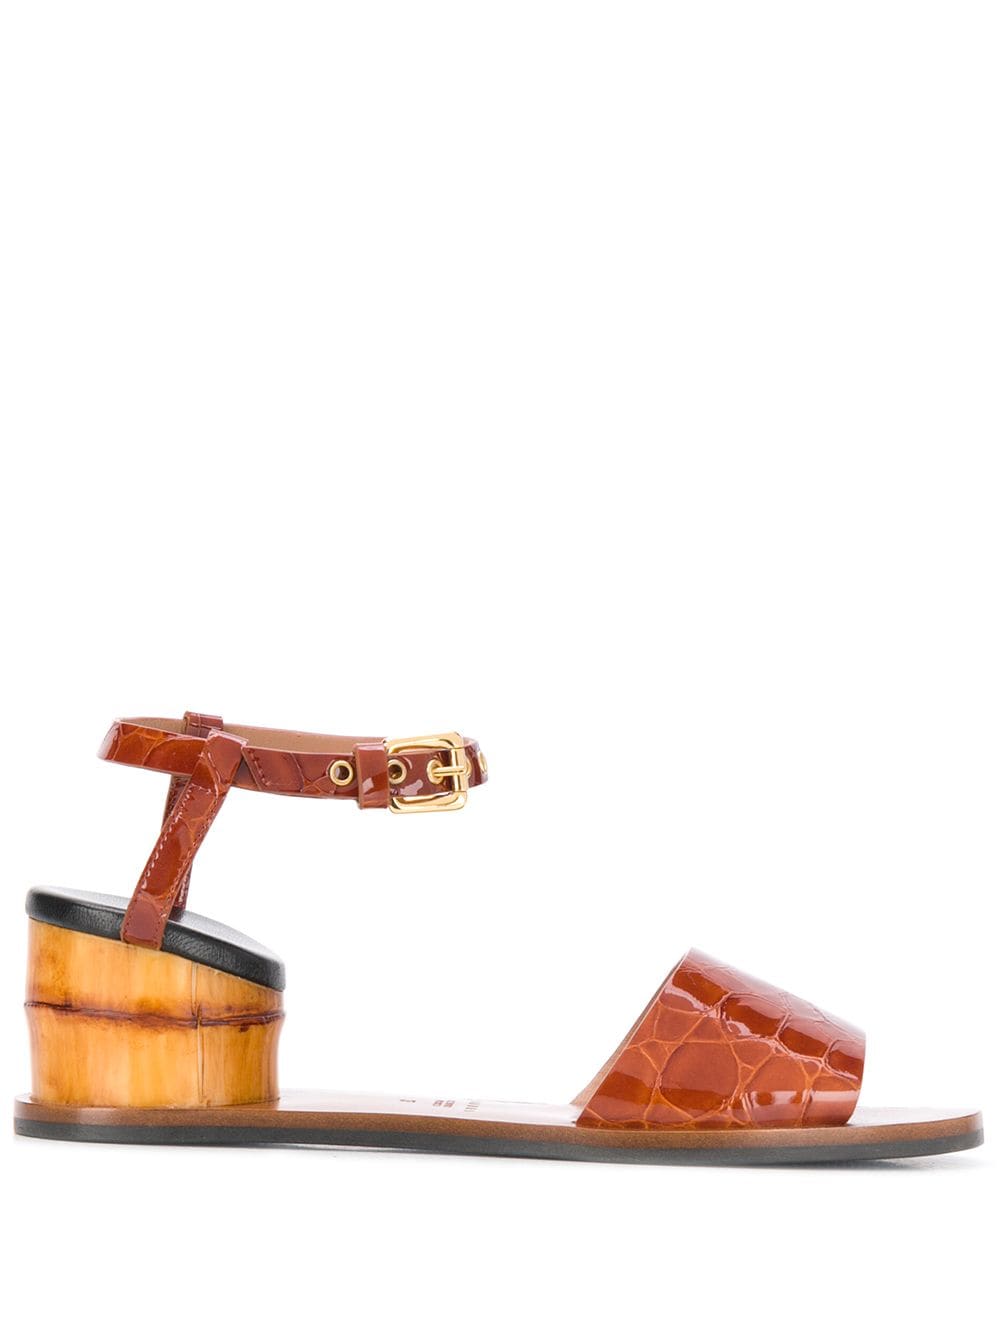 bamboo sandals website